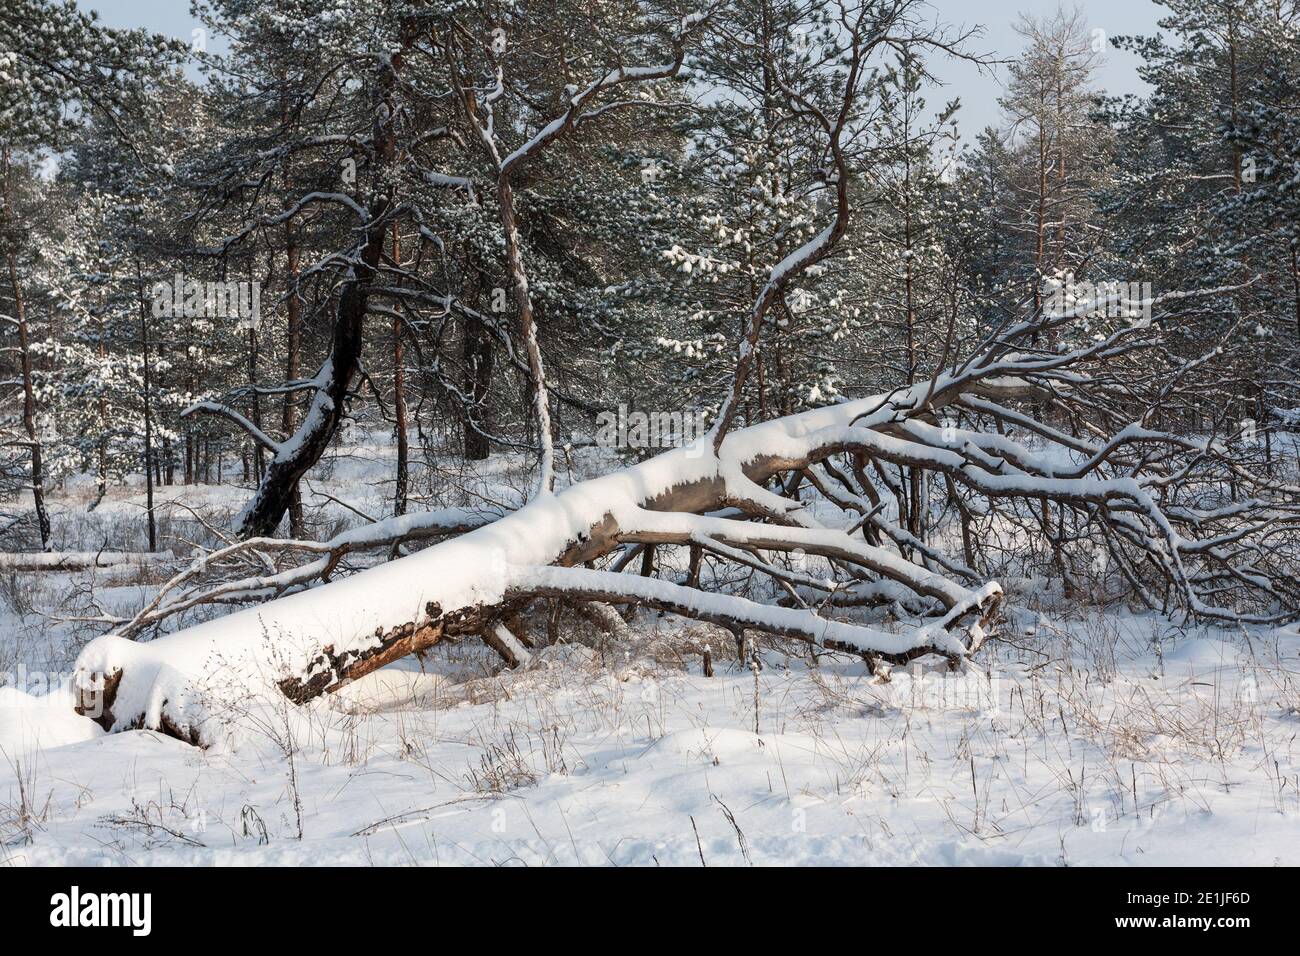 windbreak tree in a snowy winter pine forest Stock Photo